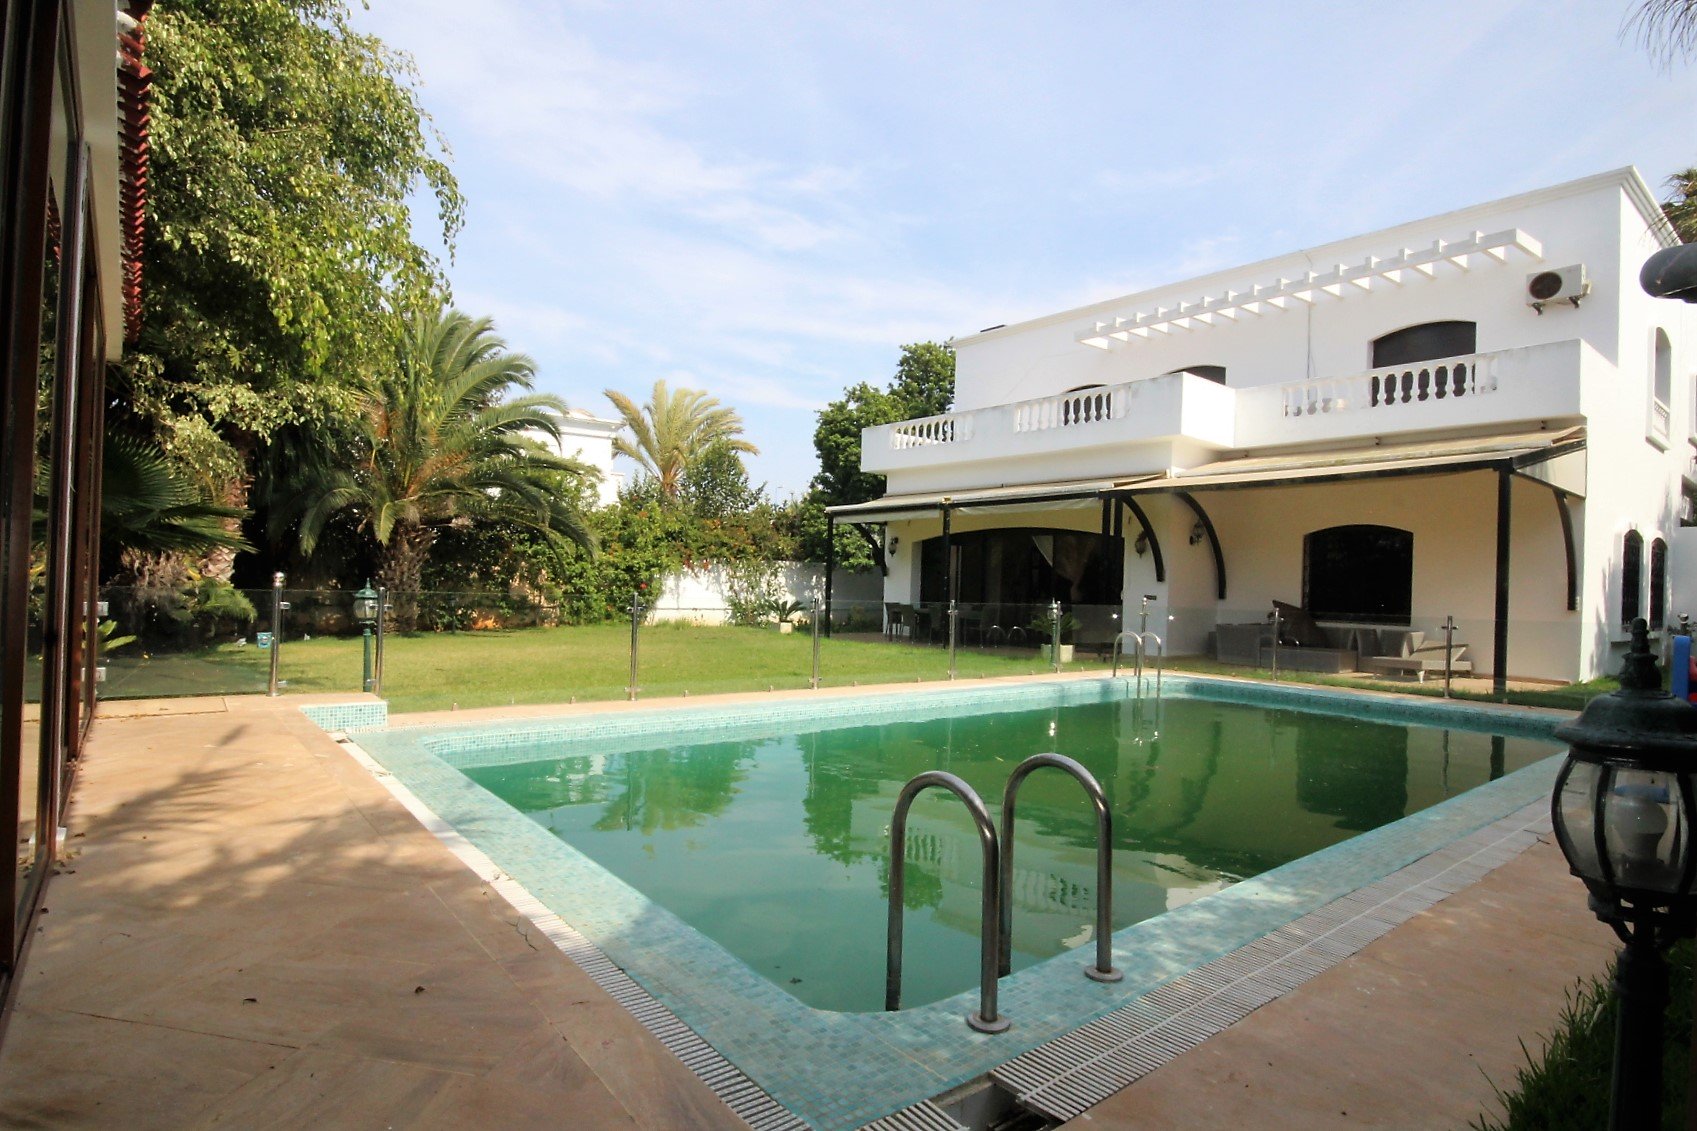 Maroc, Casablanca, Californie, à deux pas de l’école américaine, à louer vaste villa (500 m² habitable) tout confort avec piscine